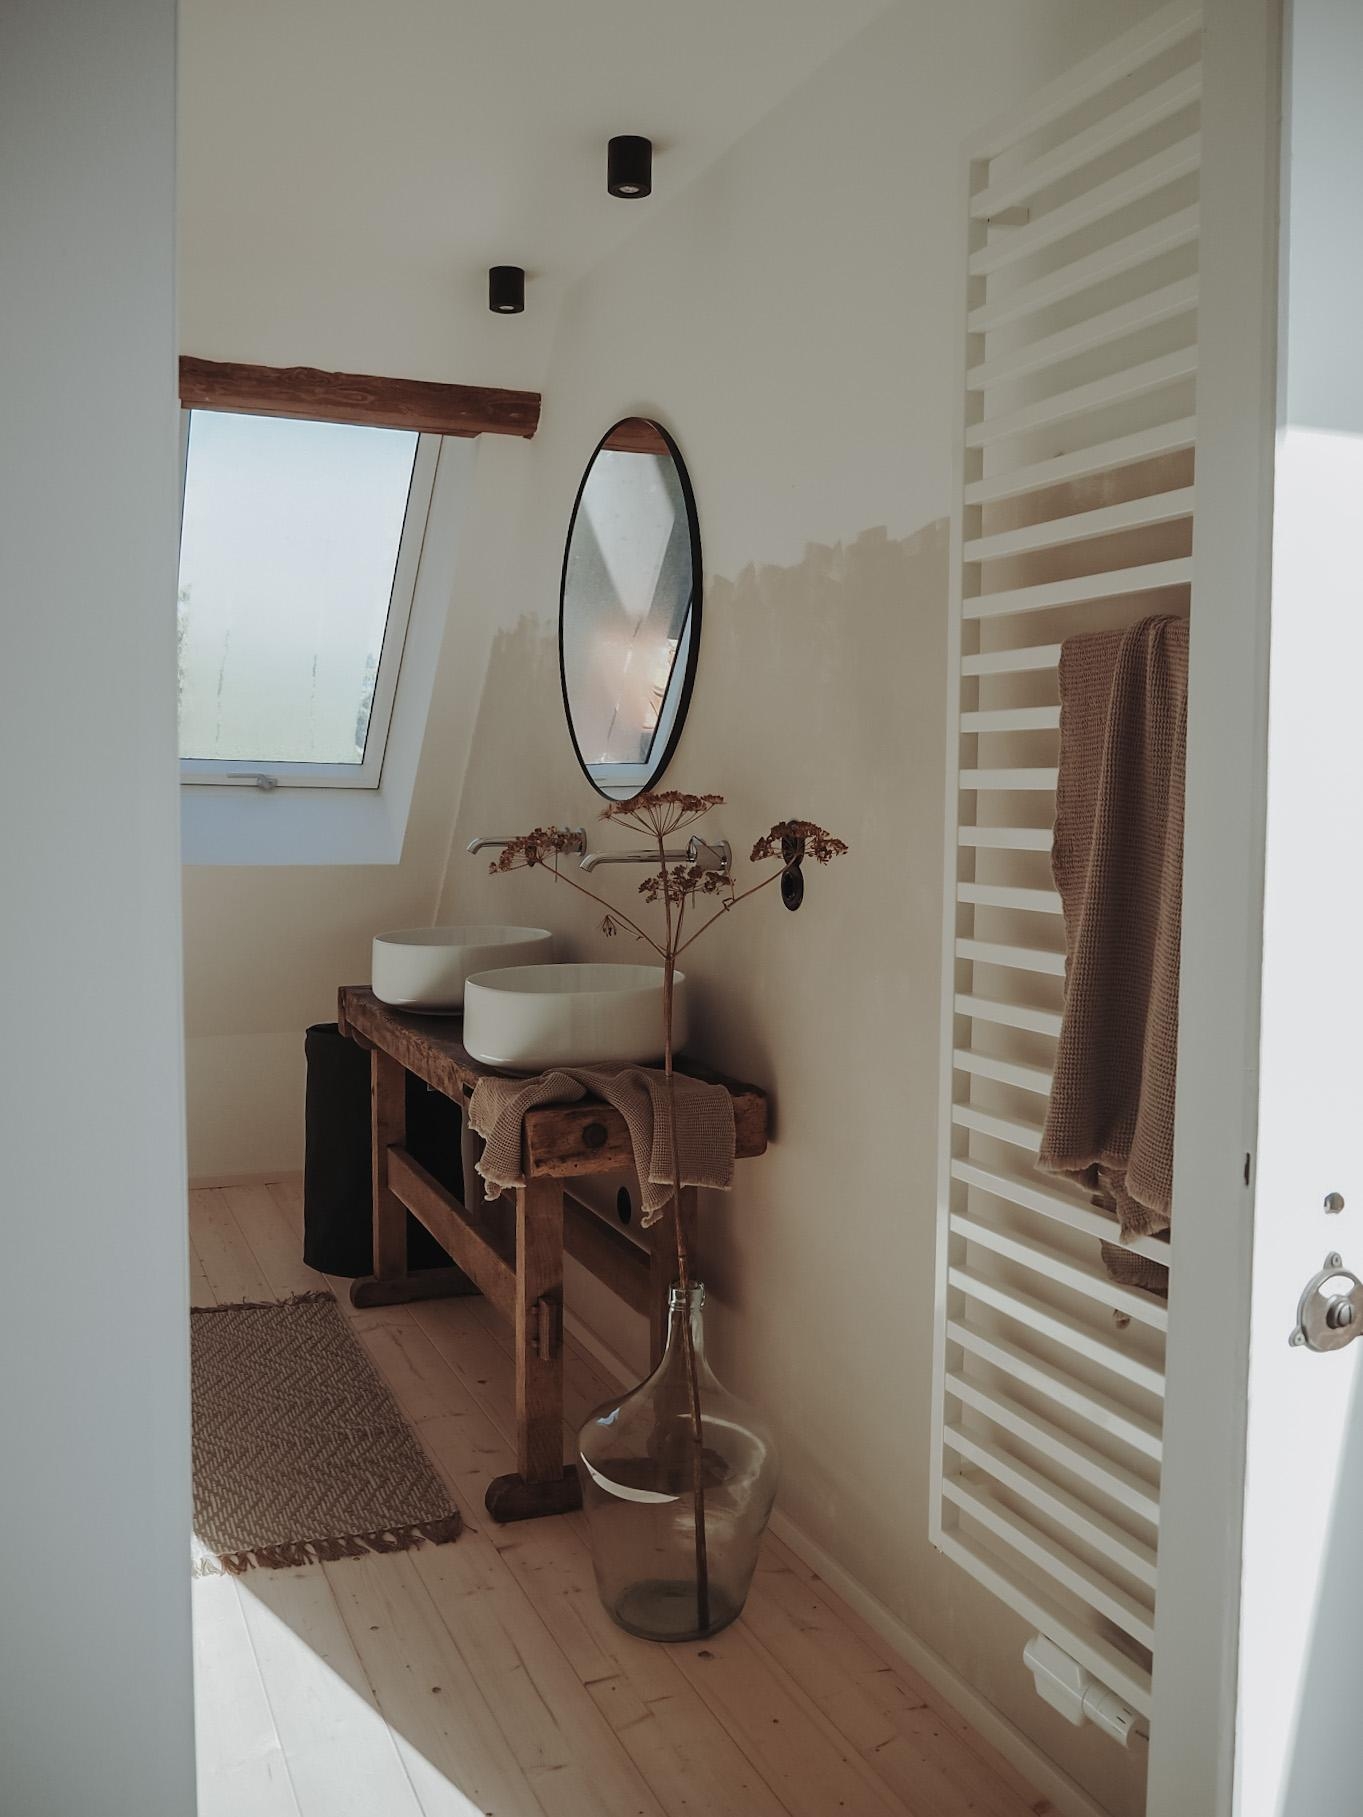 Unser Badezimmer 🤍
#badezimmer #altbau #waschtisch #werkbank #trockenblume #badezimmerdeko